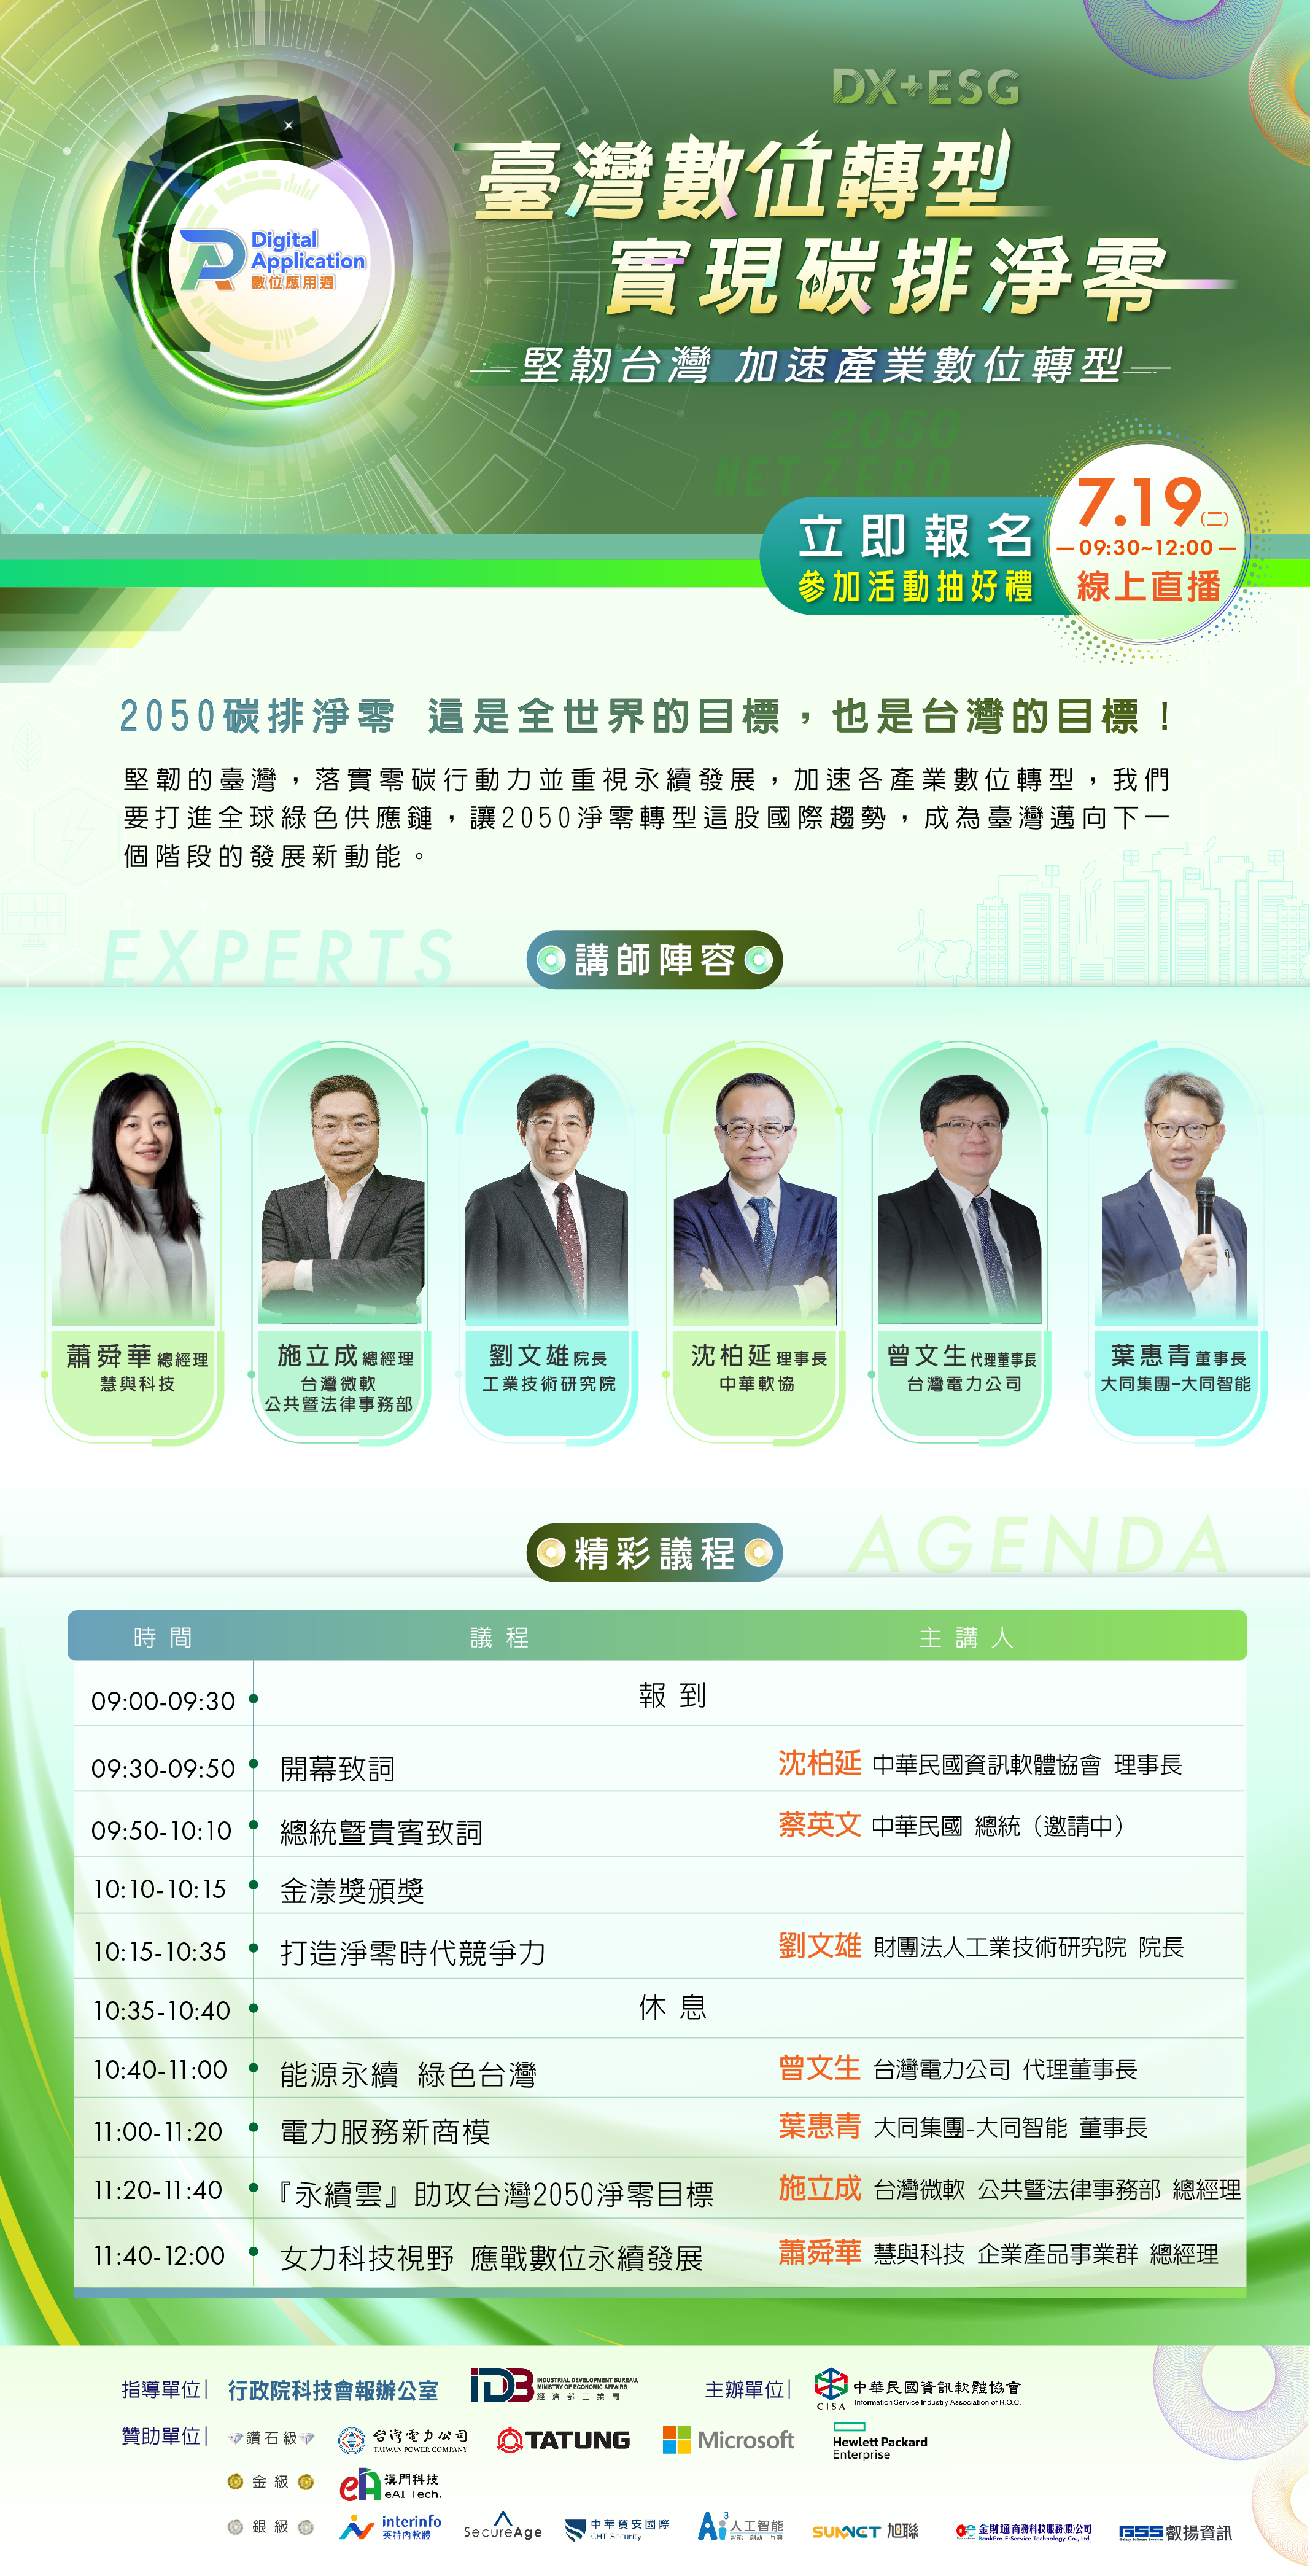 「堅韌台灣 加速產業數位轉型」開幕論壇